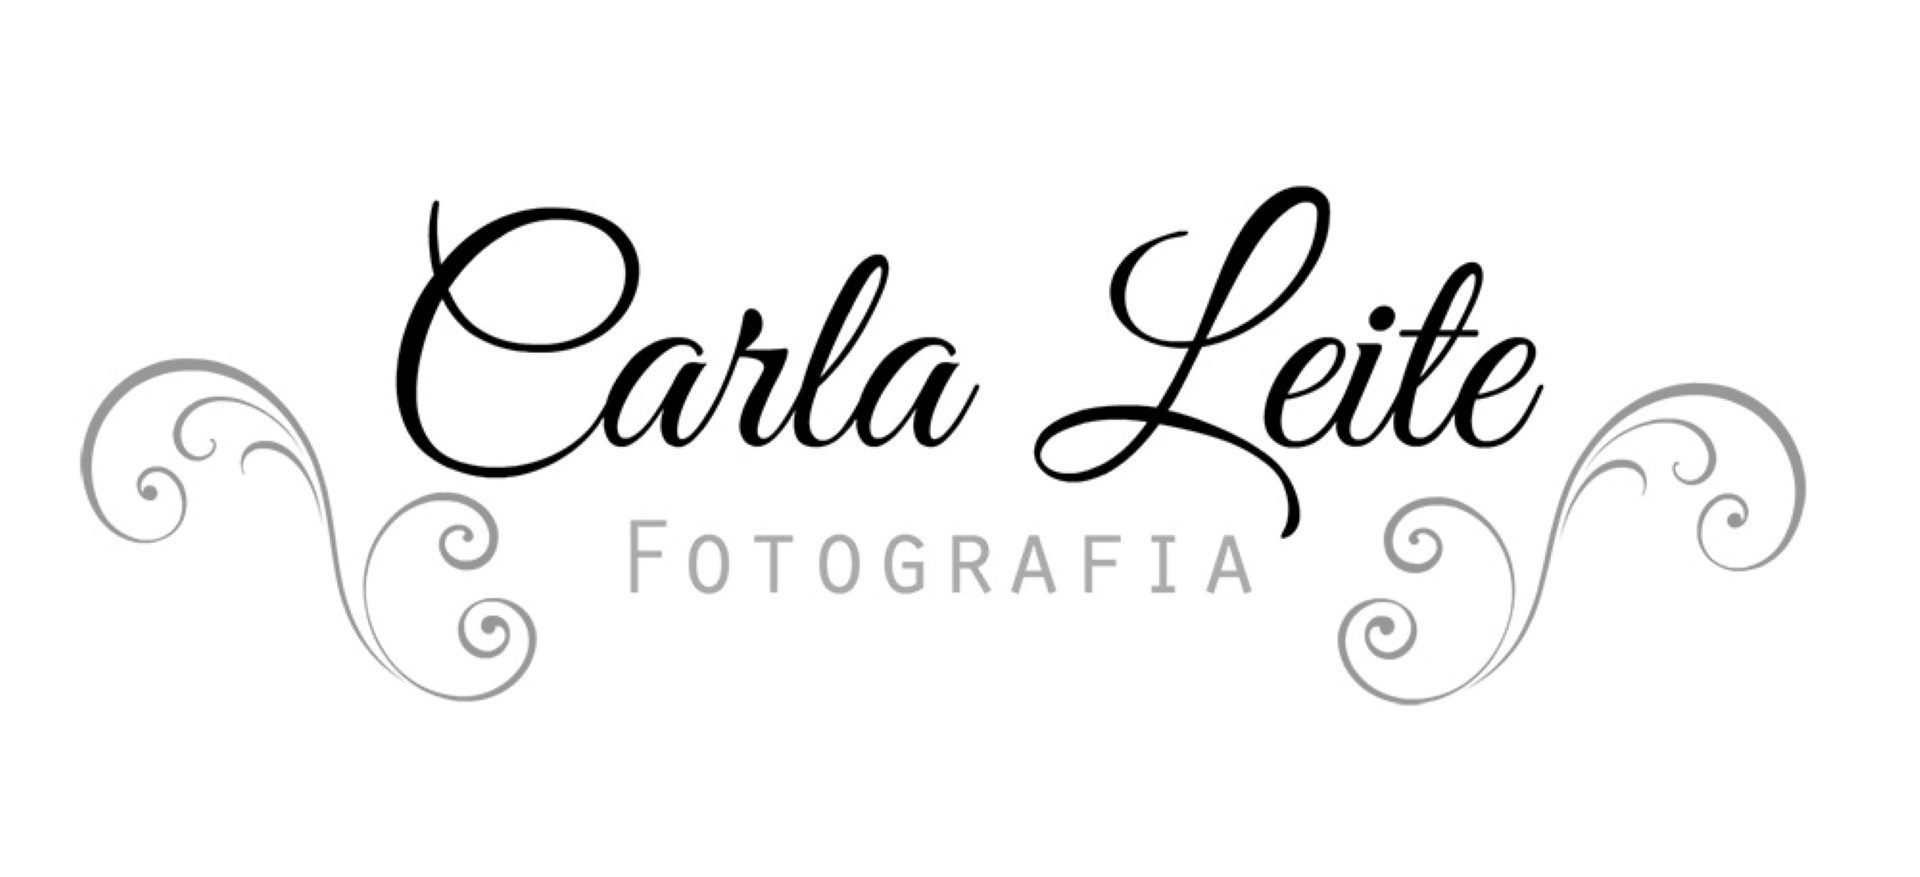 Carla Leite Fotografia - Logo Antigo